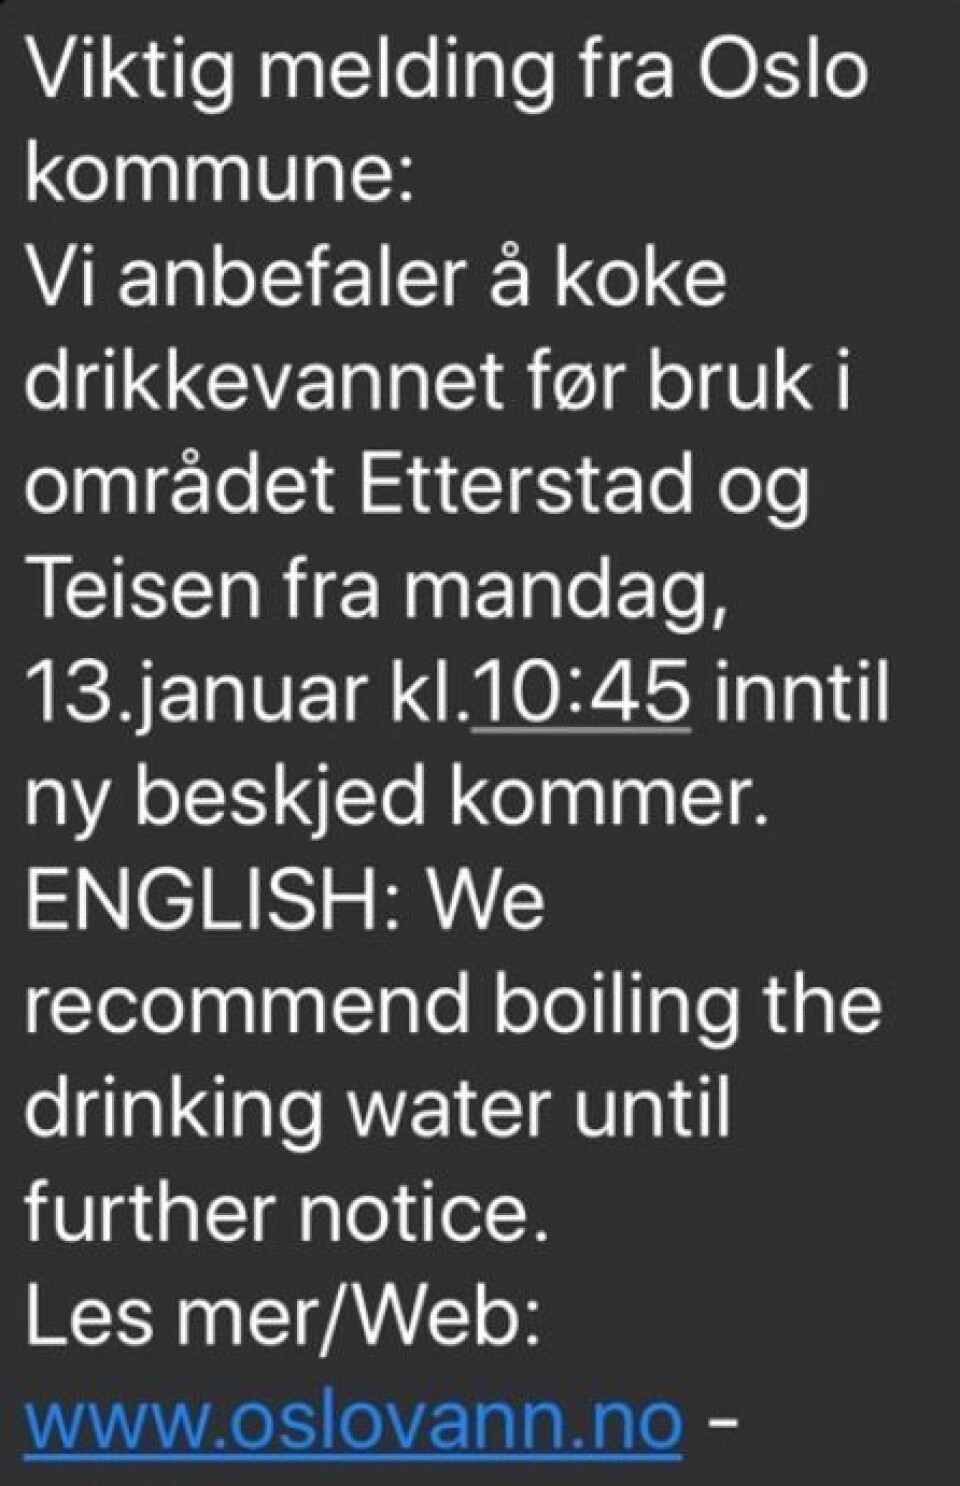 Folk på Etterstad, Teisen og Helsfyr må koke vannet, for å være sikre på at det er trygt.